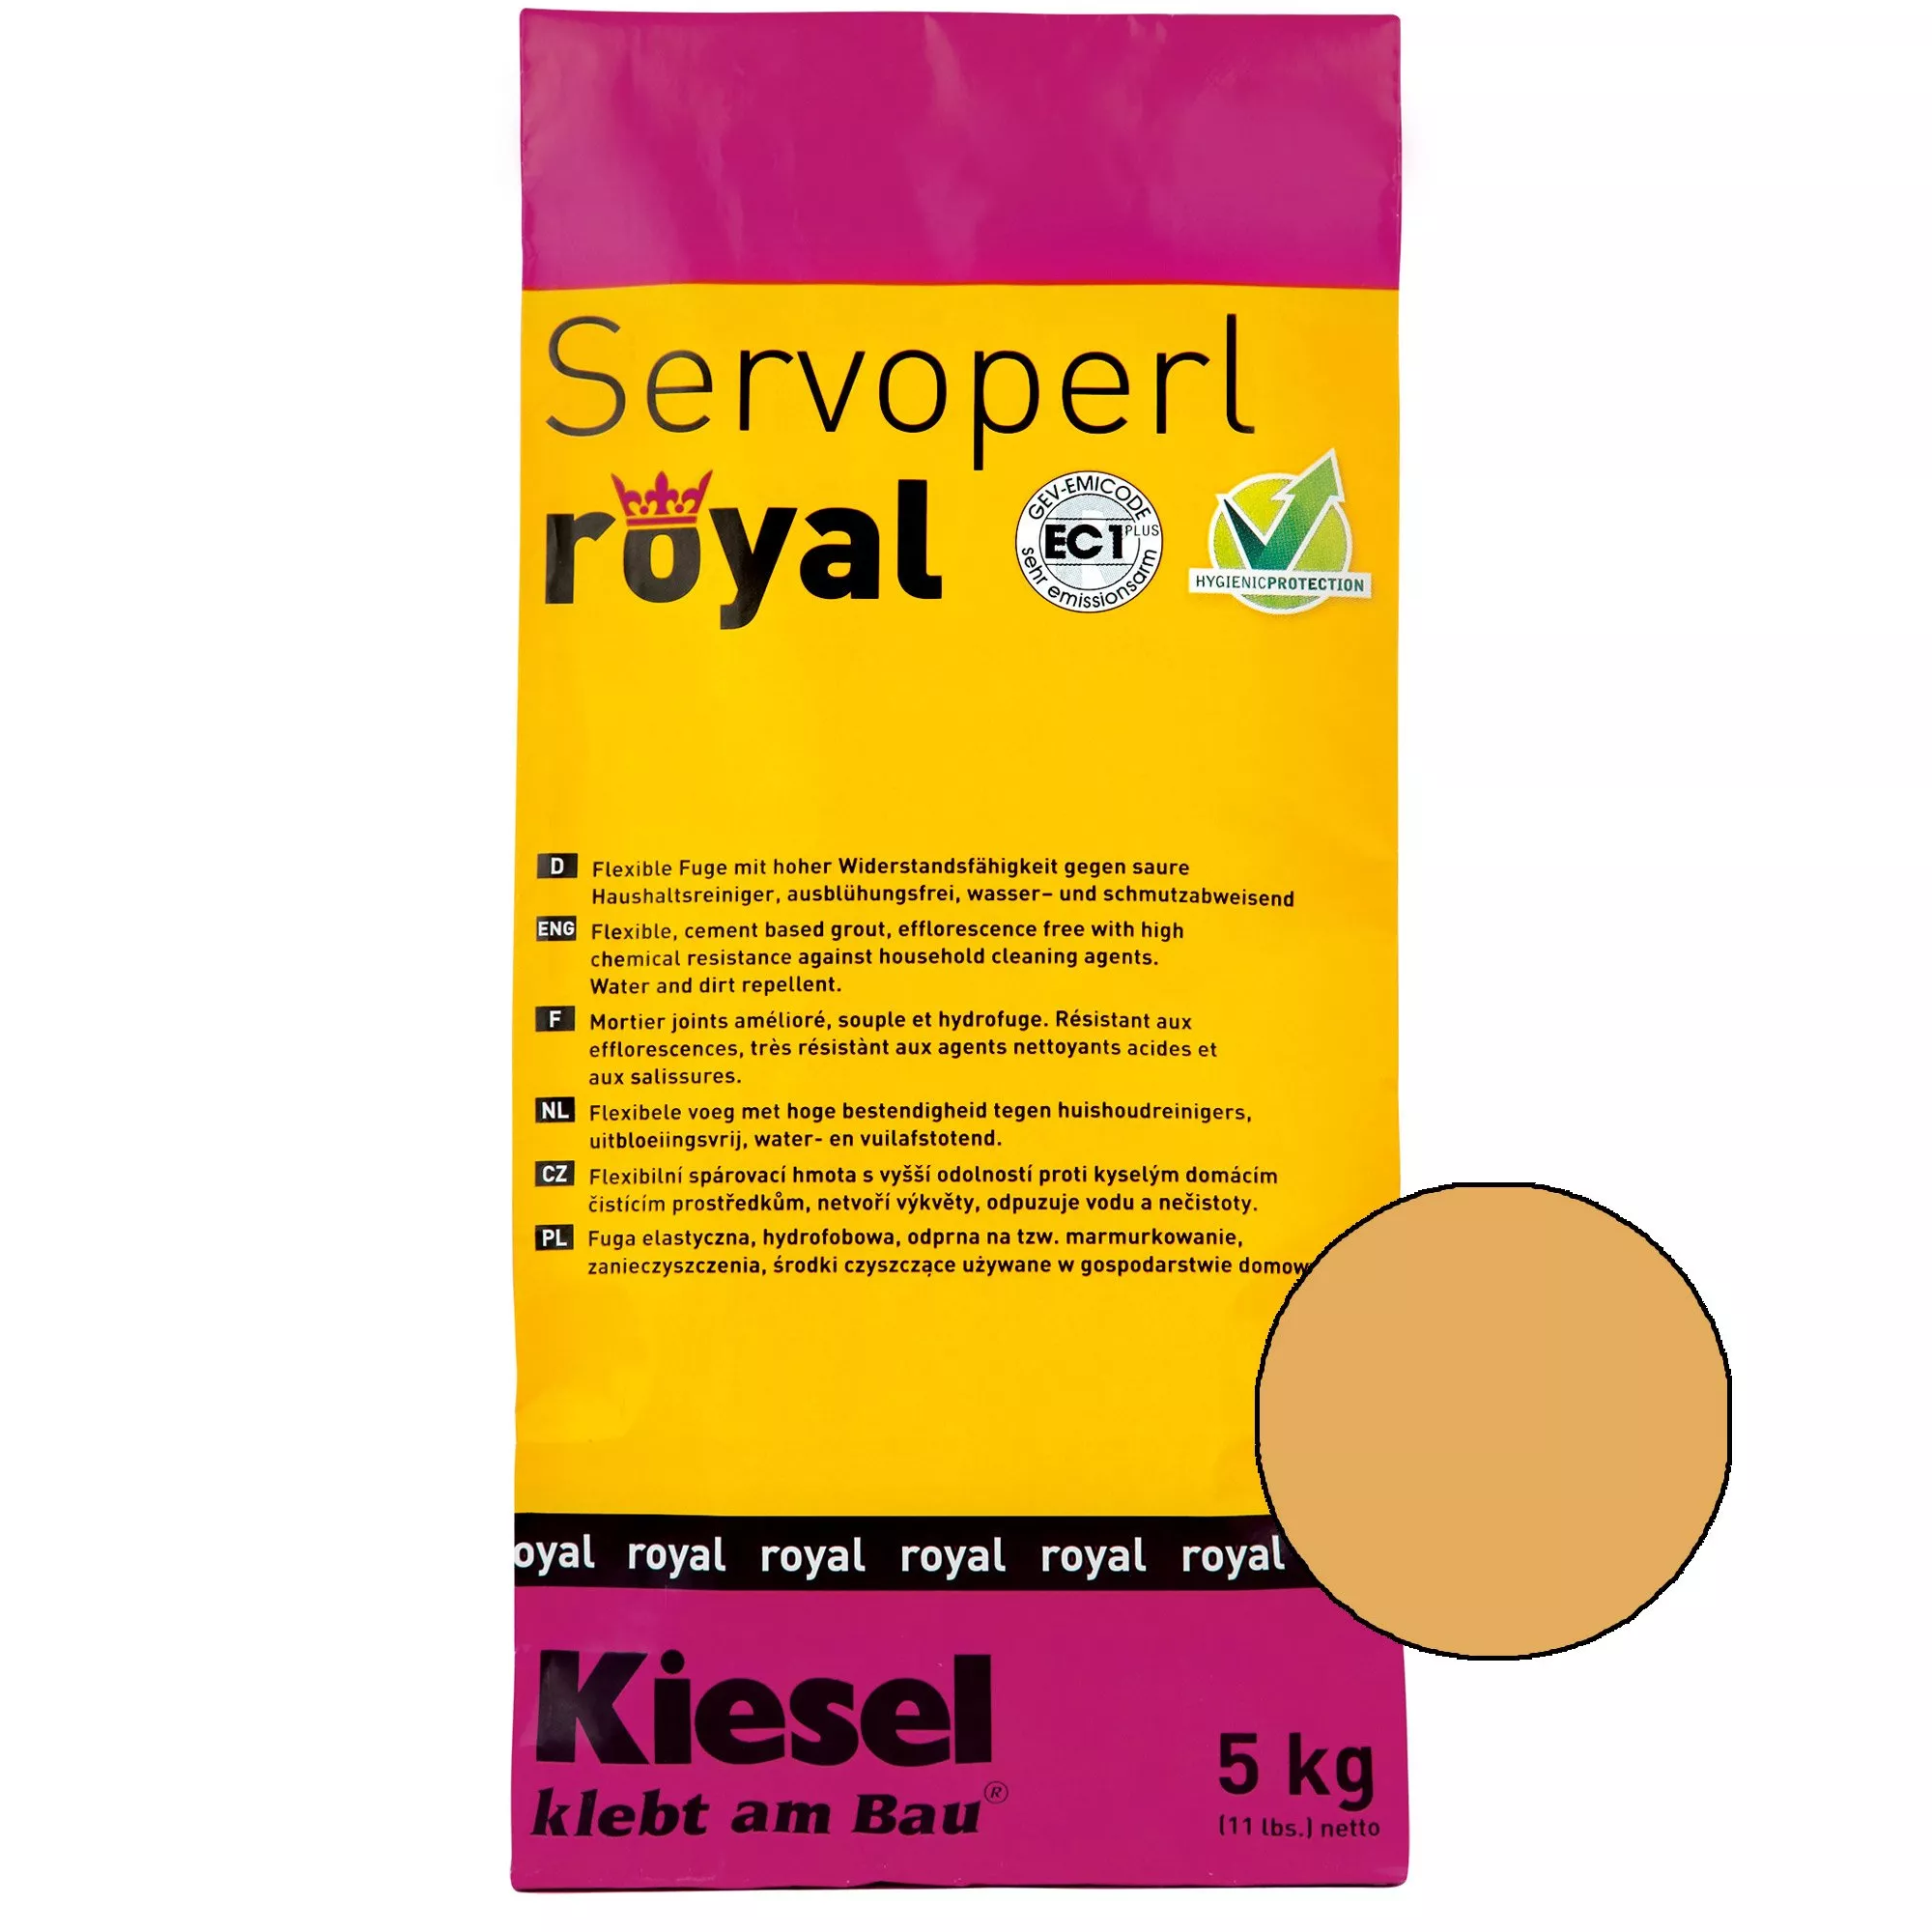 Kiesel Servoperl royal - fugemasse-5kg Sahara